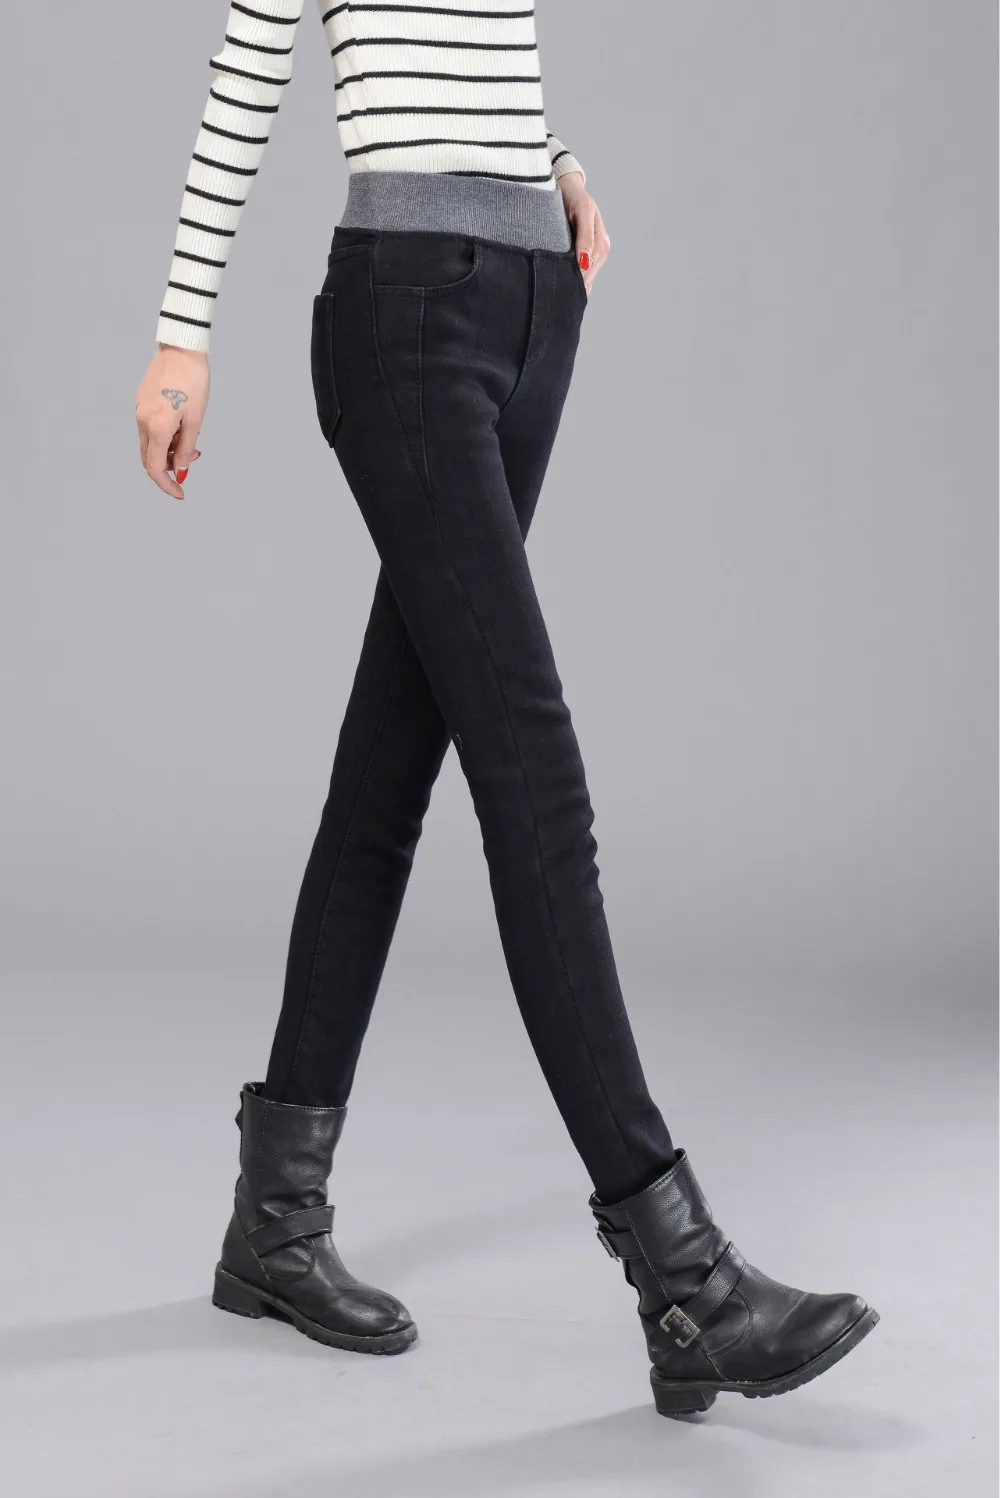 WKOUD негабаритных зимних джинсов женские тертые обтягивающие потертые джинсы стрейч джинсовые узкие брюки женские теплые брюки P8727